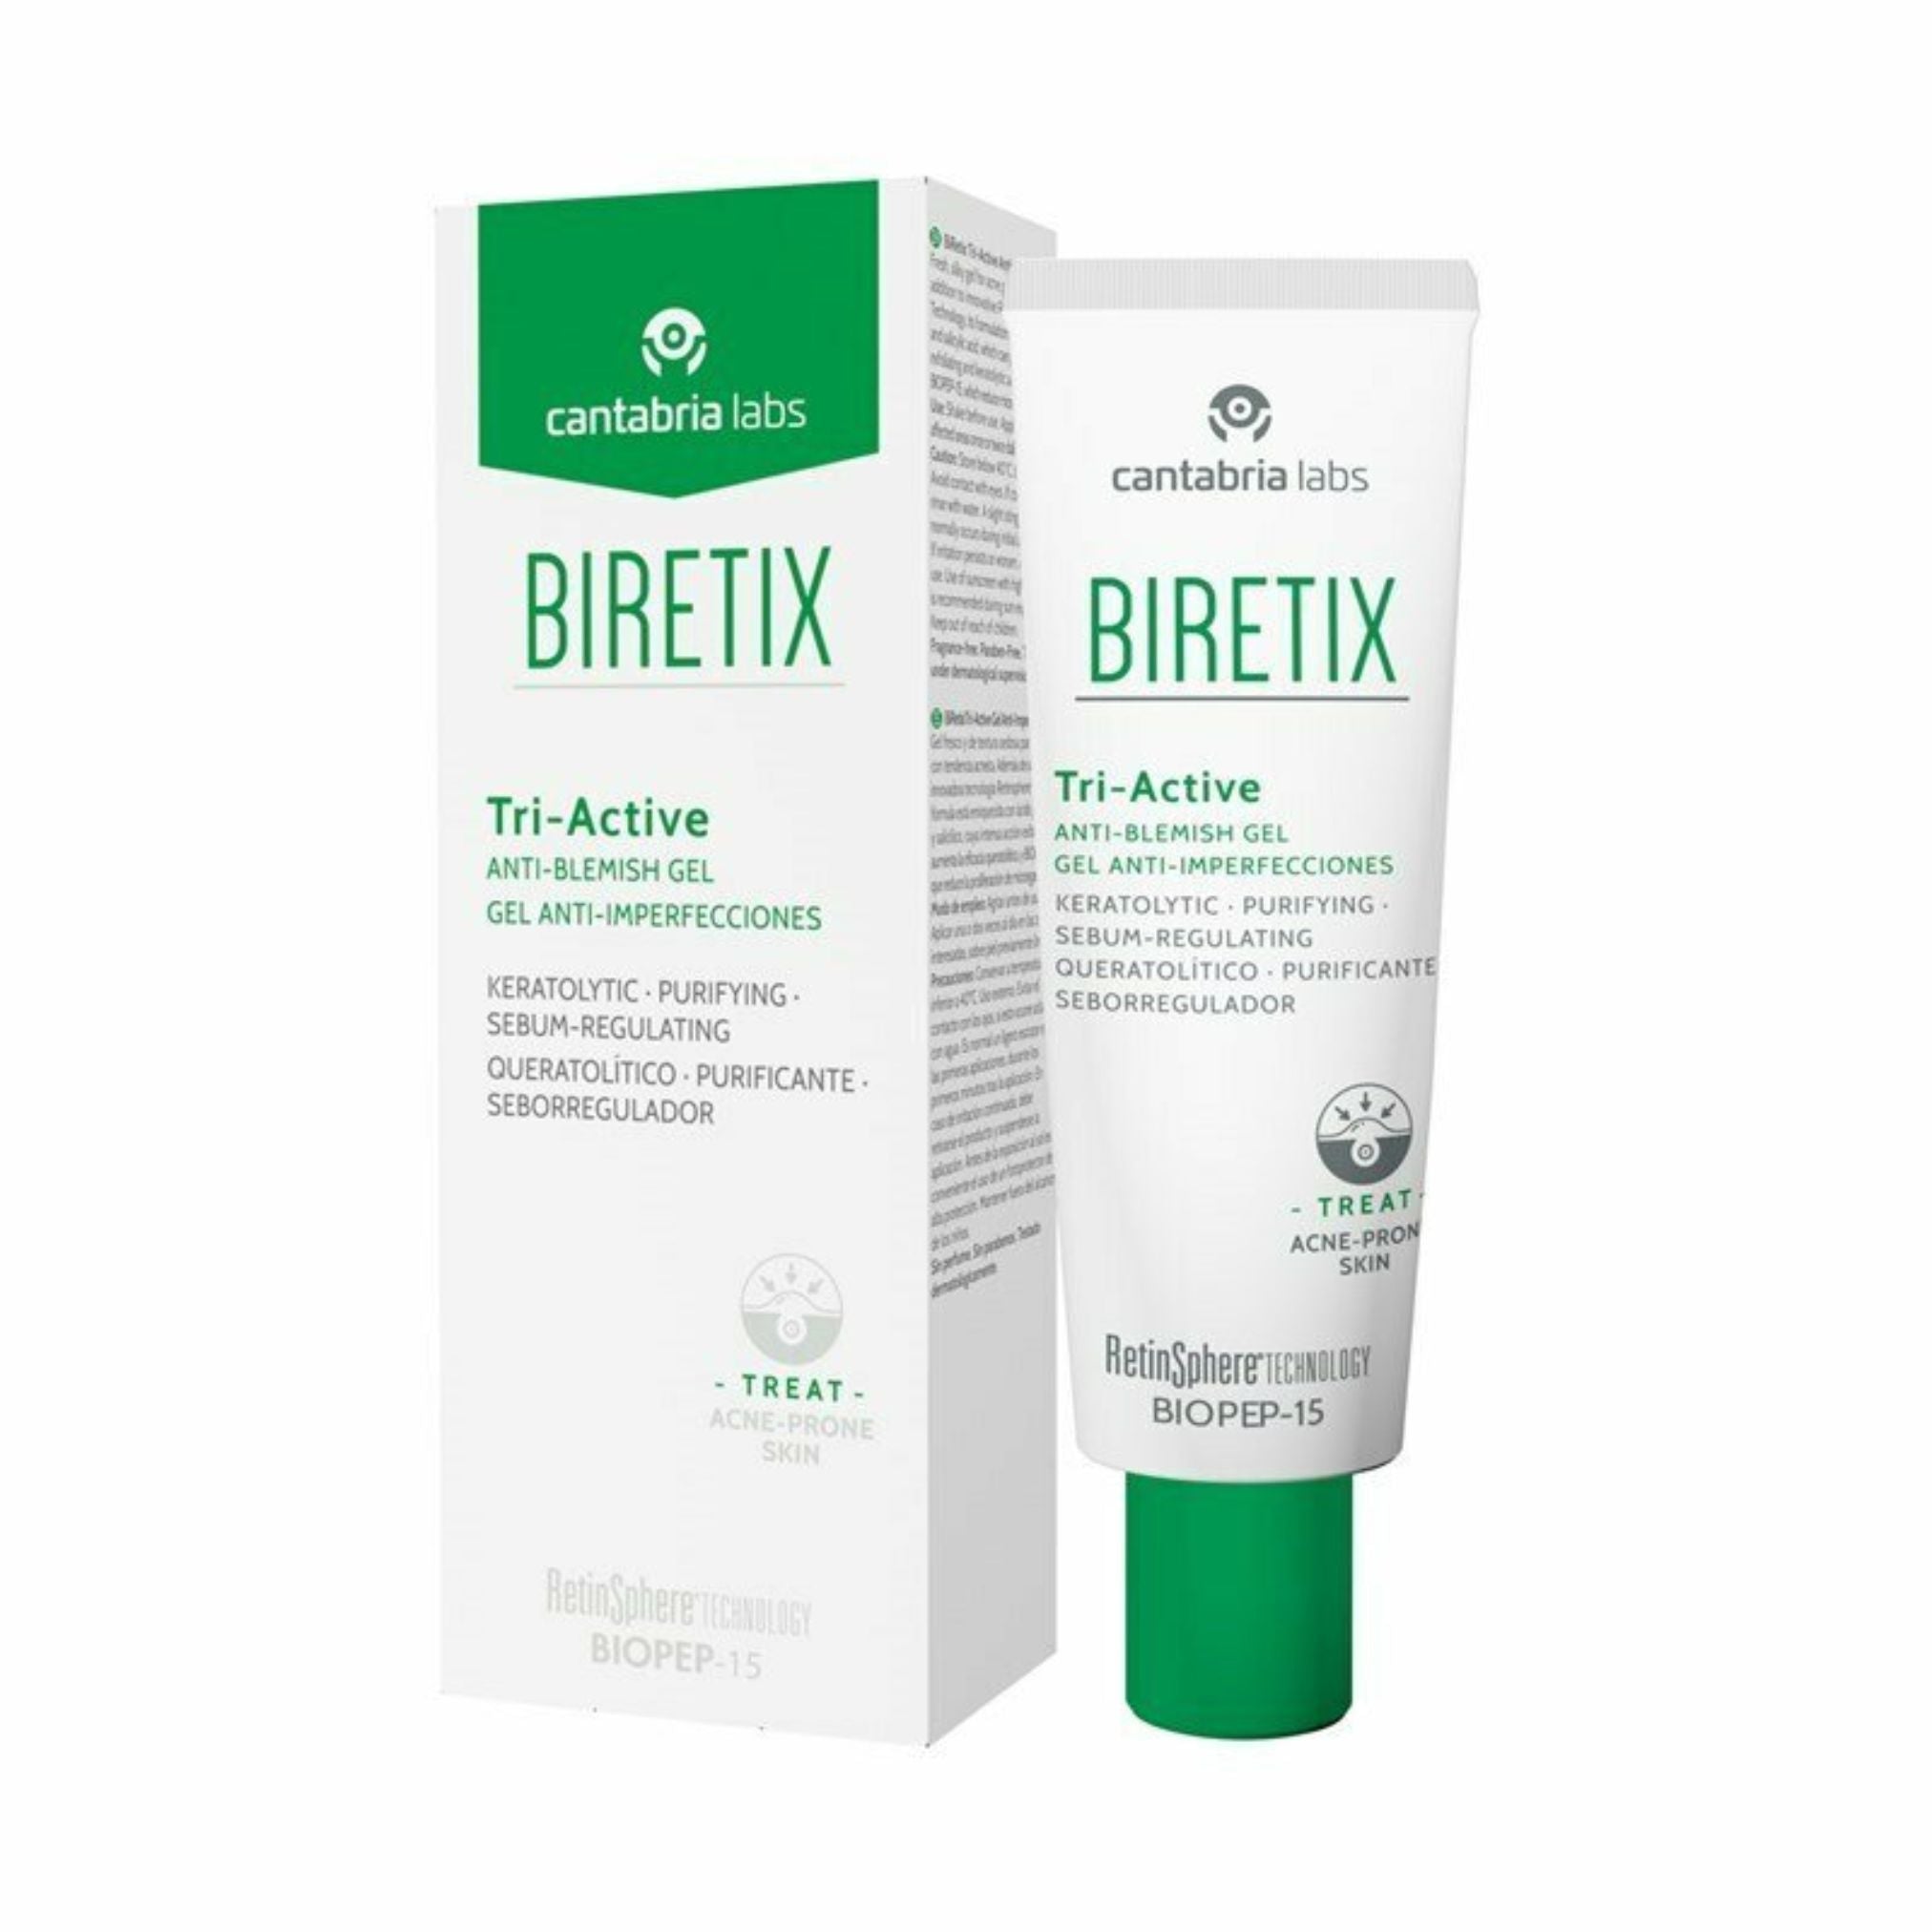 BiRetix Tri-Active Anti-Blemish Gel 50ml